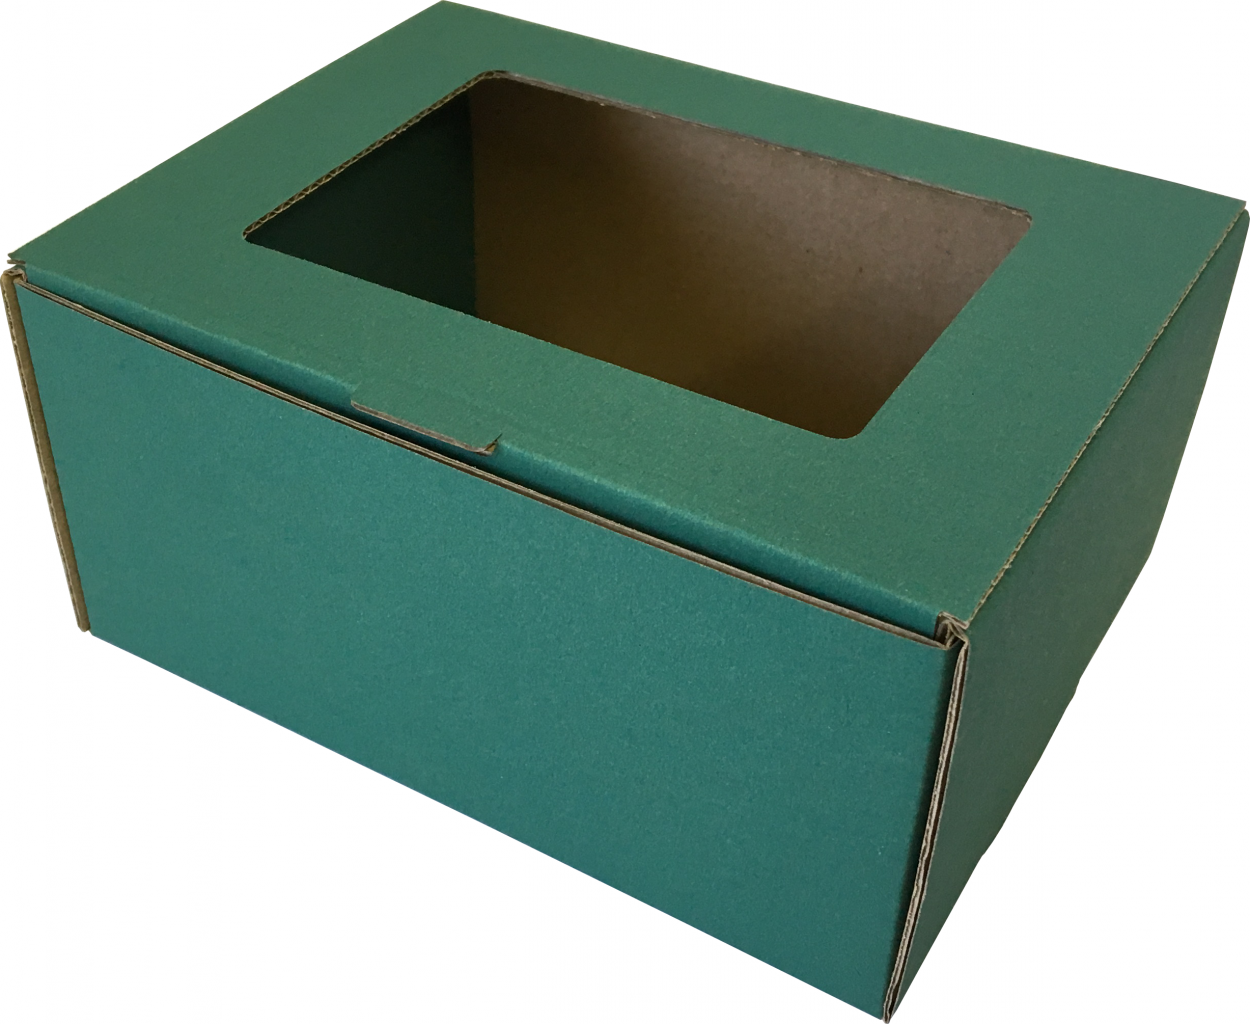 Színes kis méretű önzáró, ablakos (fóliás) tároló doboz (140x110x70 mm) Színes kis méretű, önzáródó, ablakos (fóliás), hullámkarton tároló doboz felnyitható tetővel

Felhasználás: 
A doboz tetején lévő kivágásnak köszönhetően jól láthatóvá válik a doboz tartalma, így például: aprósüteménynek, édességeknek, ajándék tárgynak, ékszernek, szerelvényeknek egyéb alkatrészeknek kiváló csomagolást nyújt. 
Elérhető fólia nélküli és fóliázott kivitelben is.

Méret: 140 x 110 x 70 mm - ablakos (fóliás) színes hullámkarton tároló doboz

Anyag: mikrohullám karton papír
Színek: 
Színek: bordó, fekete, kék, zöld